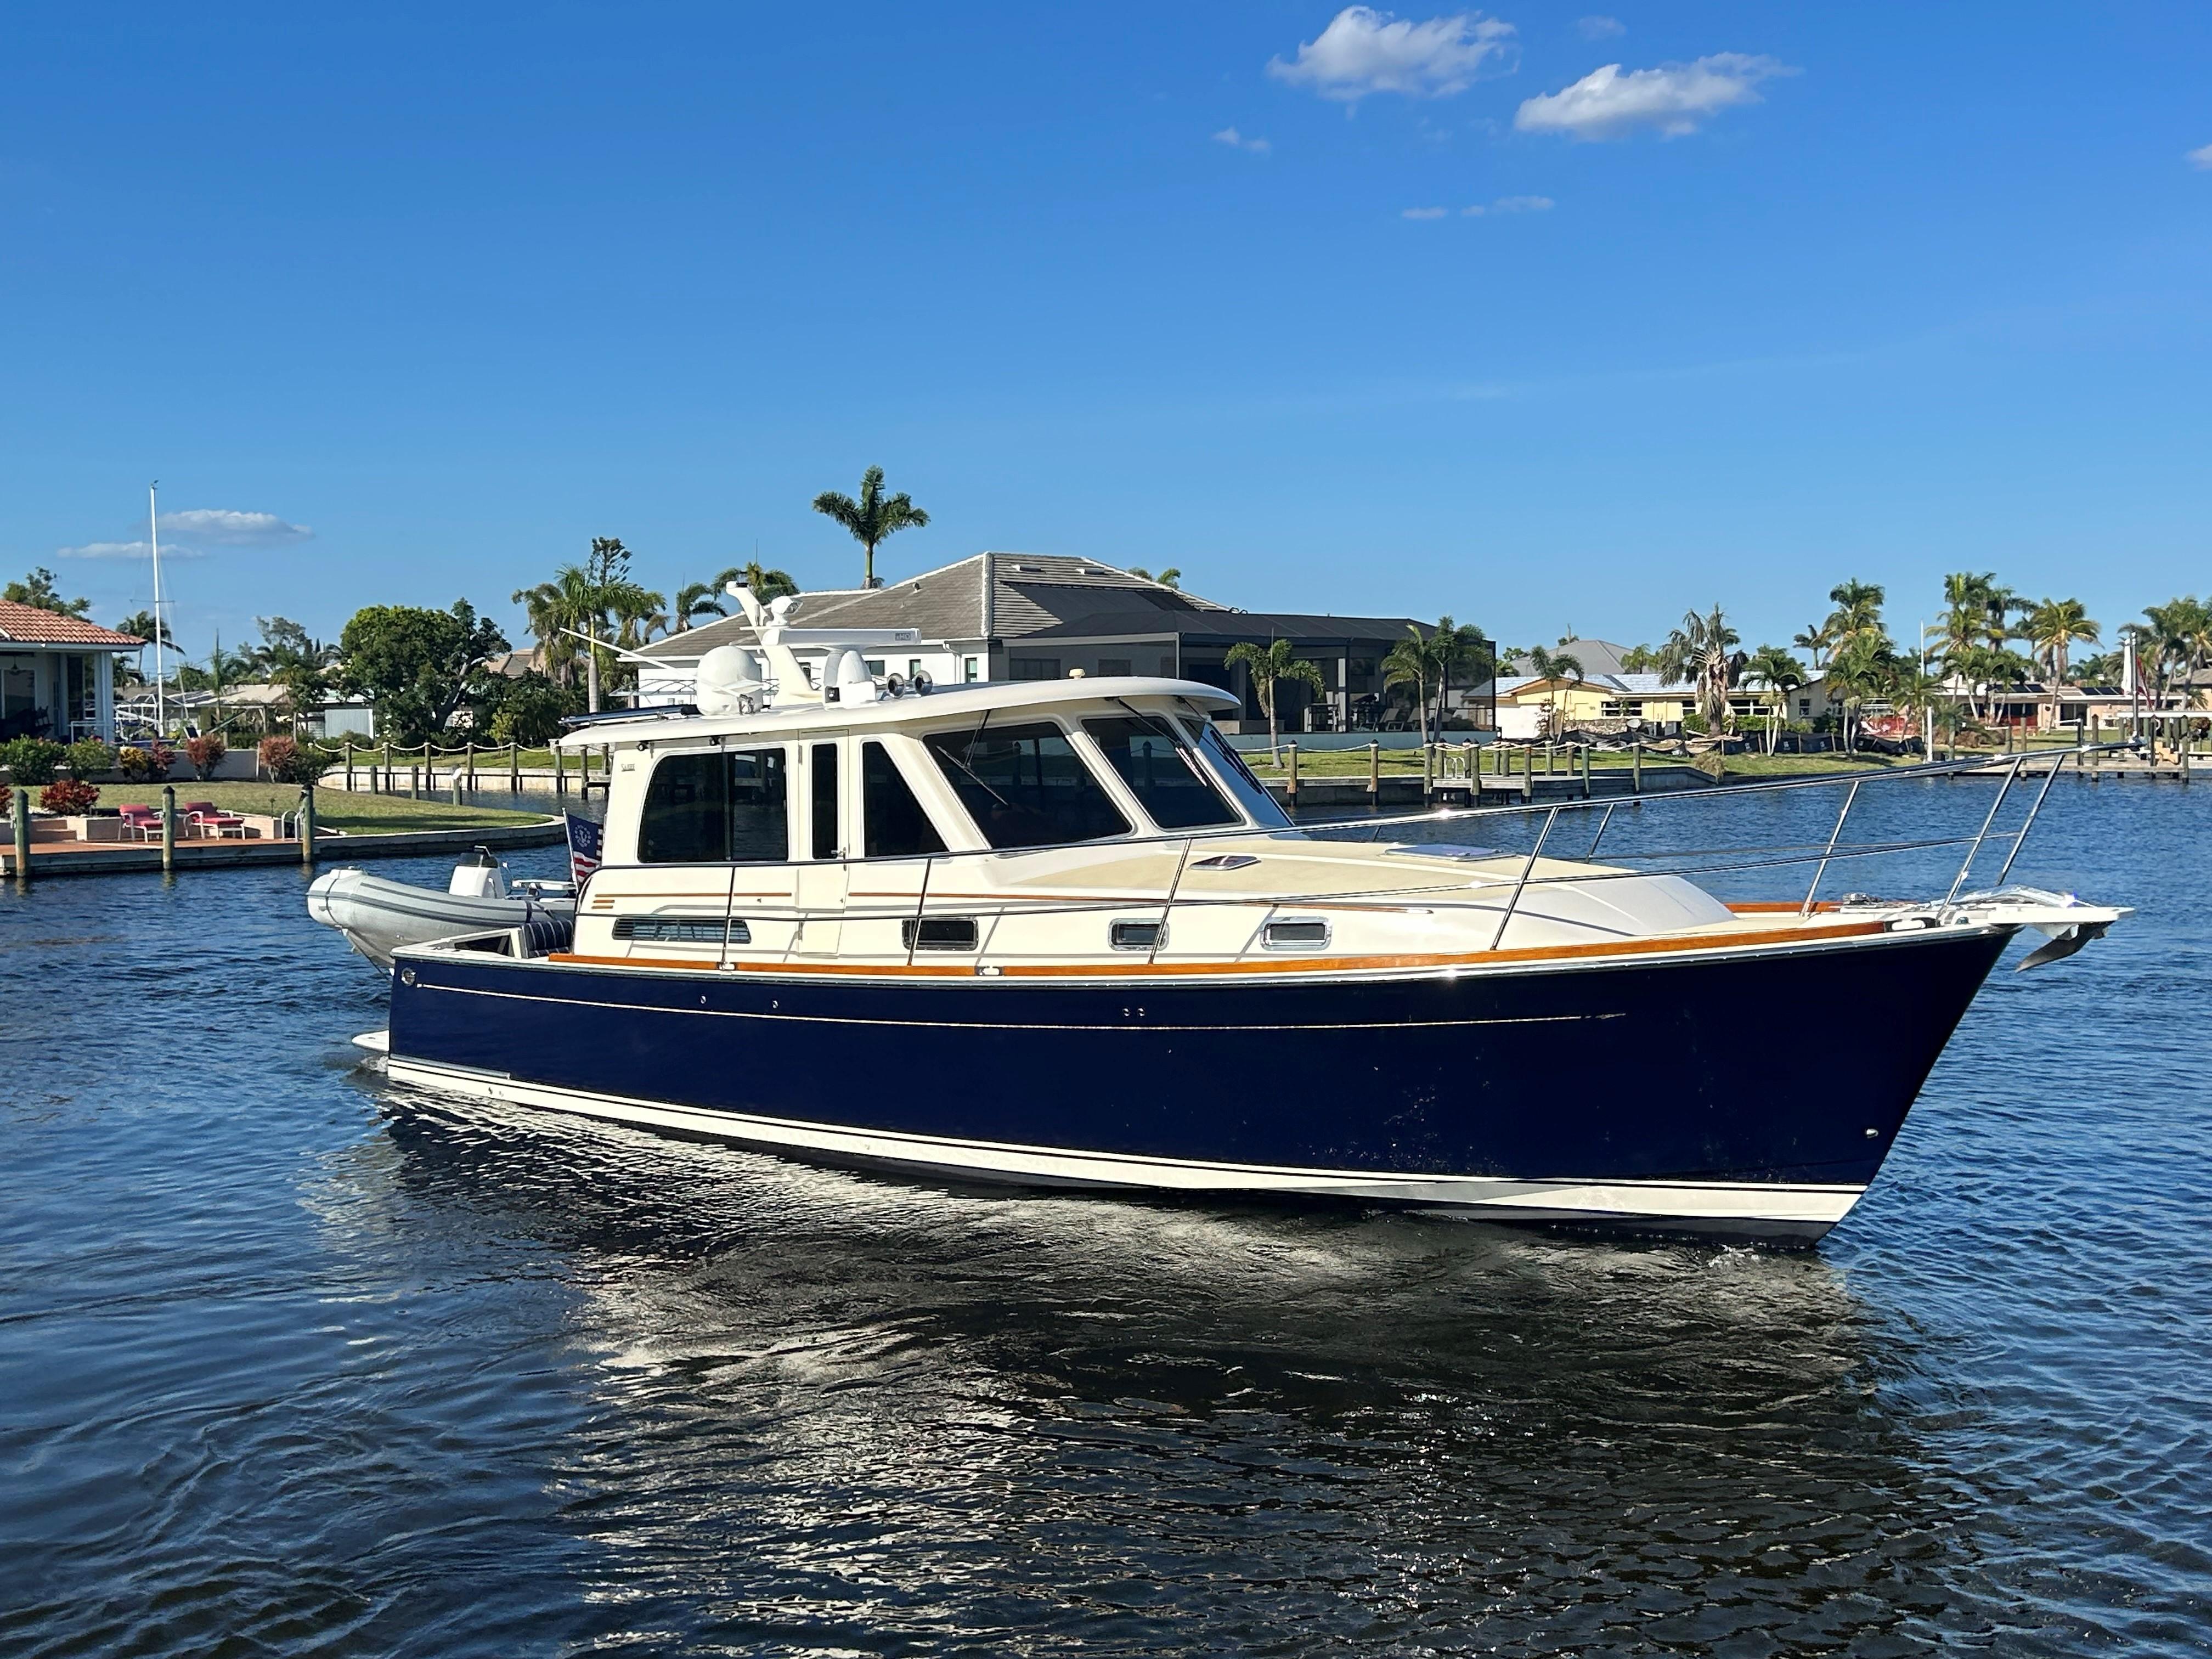 Sea Hawk Yacht for Sale, 42 Sabre Yachts Stuart, FL